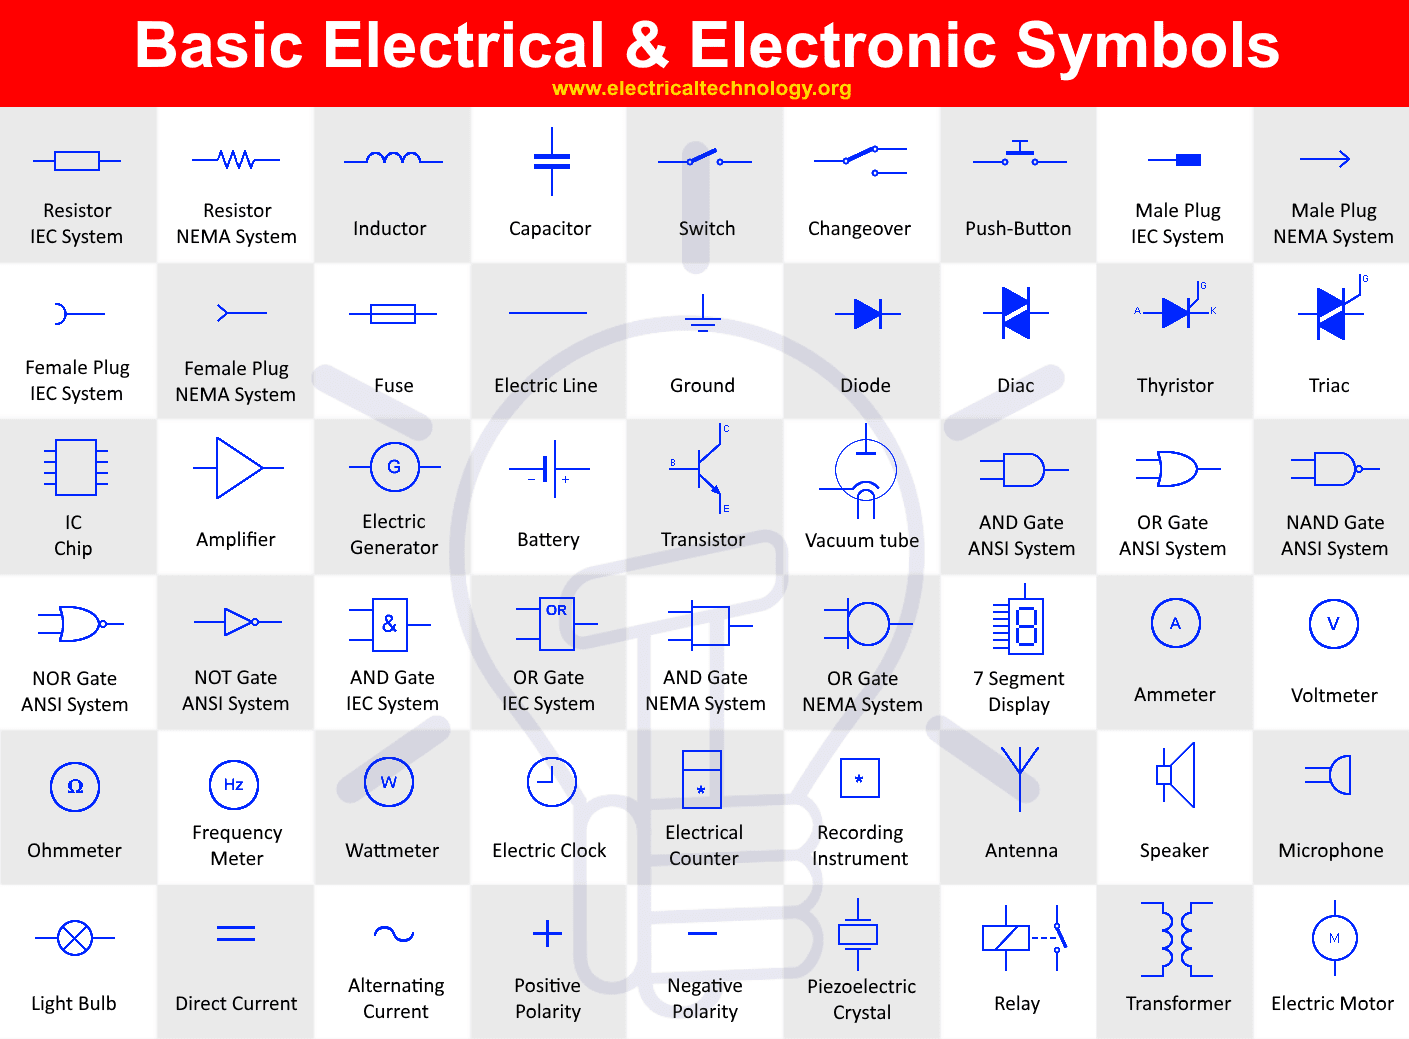 Basic Electrical and Electronic Symbols